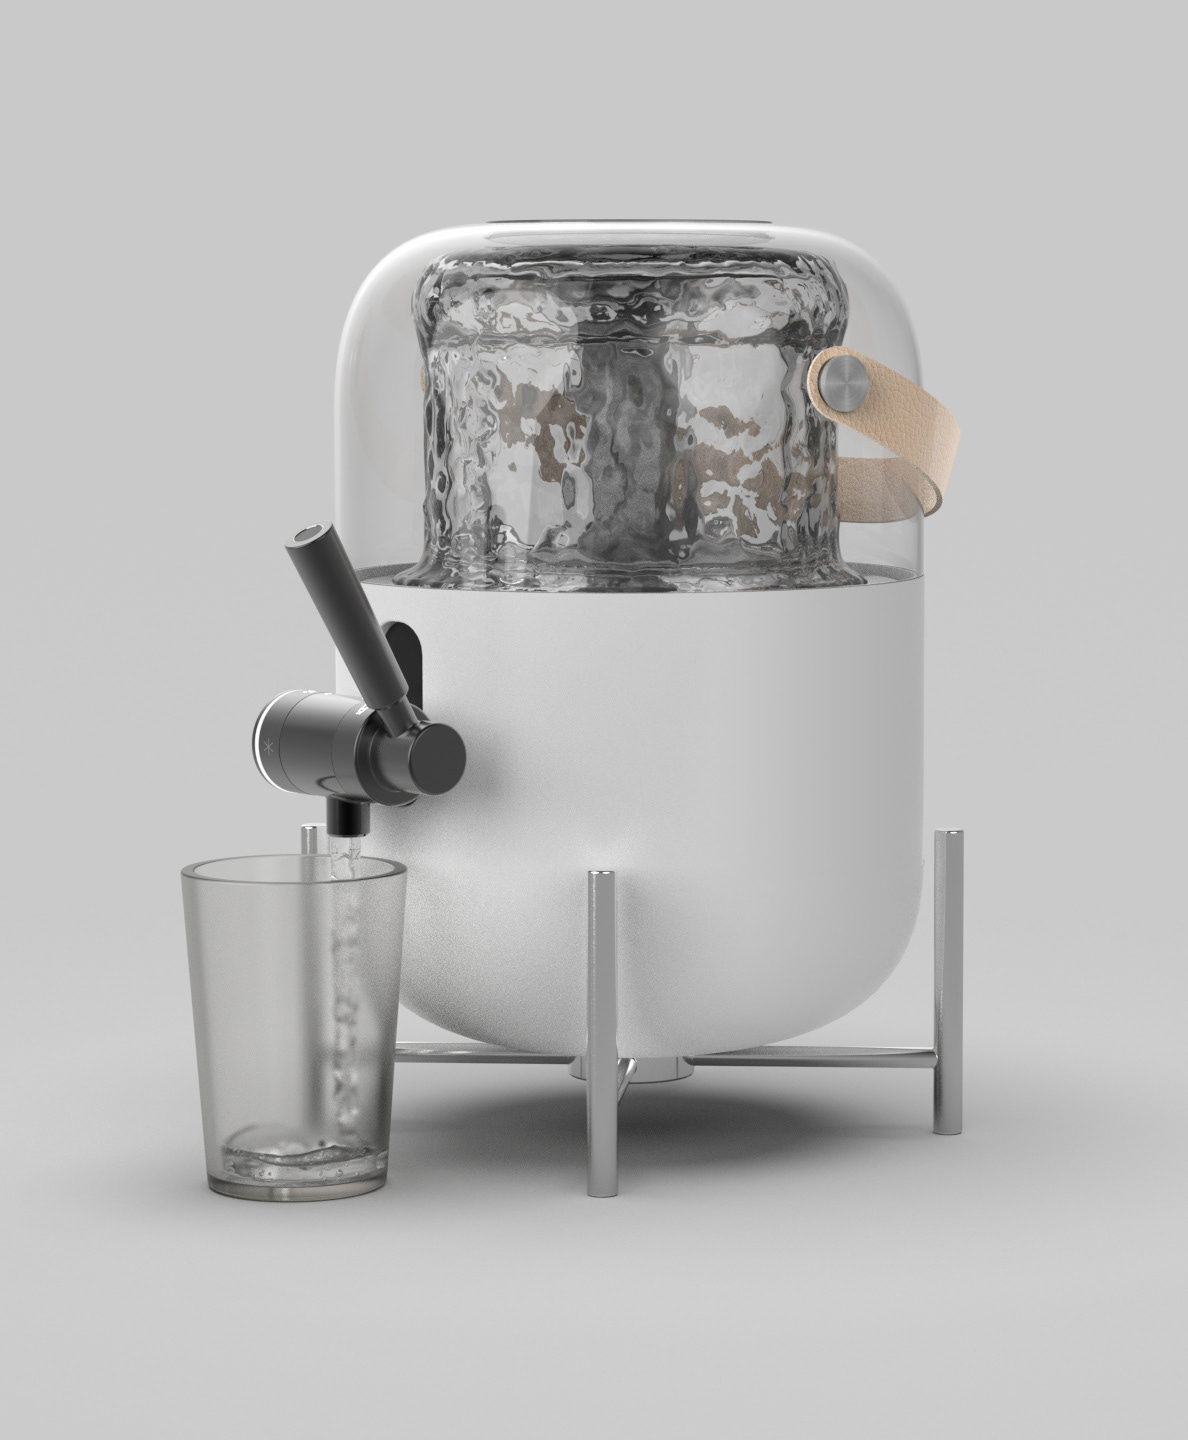 饮水机,小家电,创意,产品设计